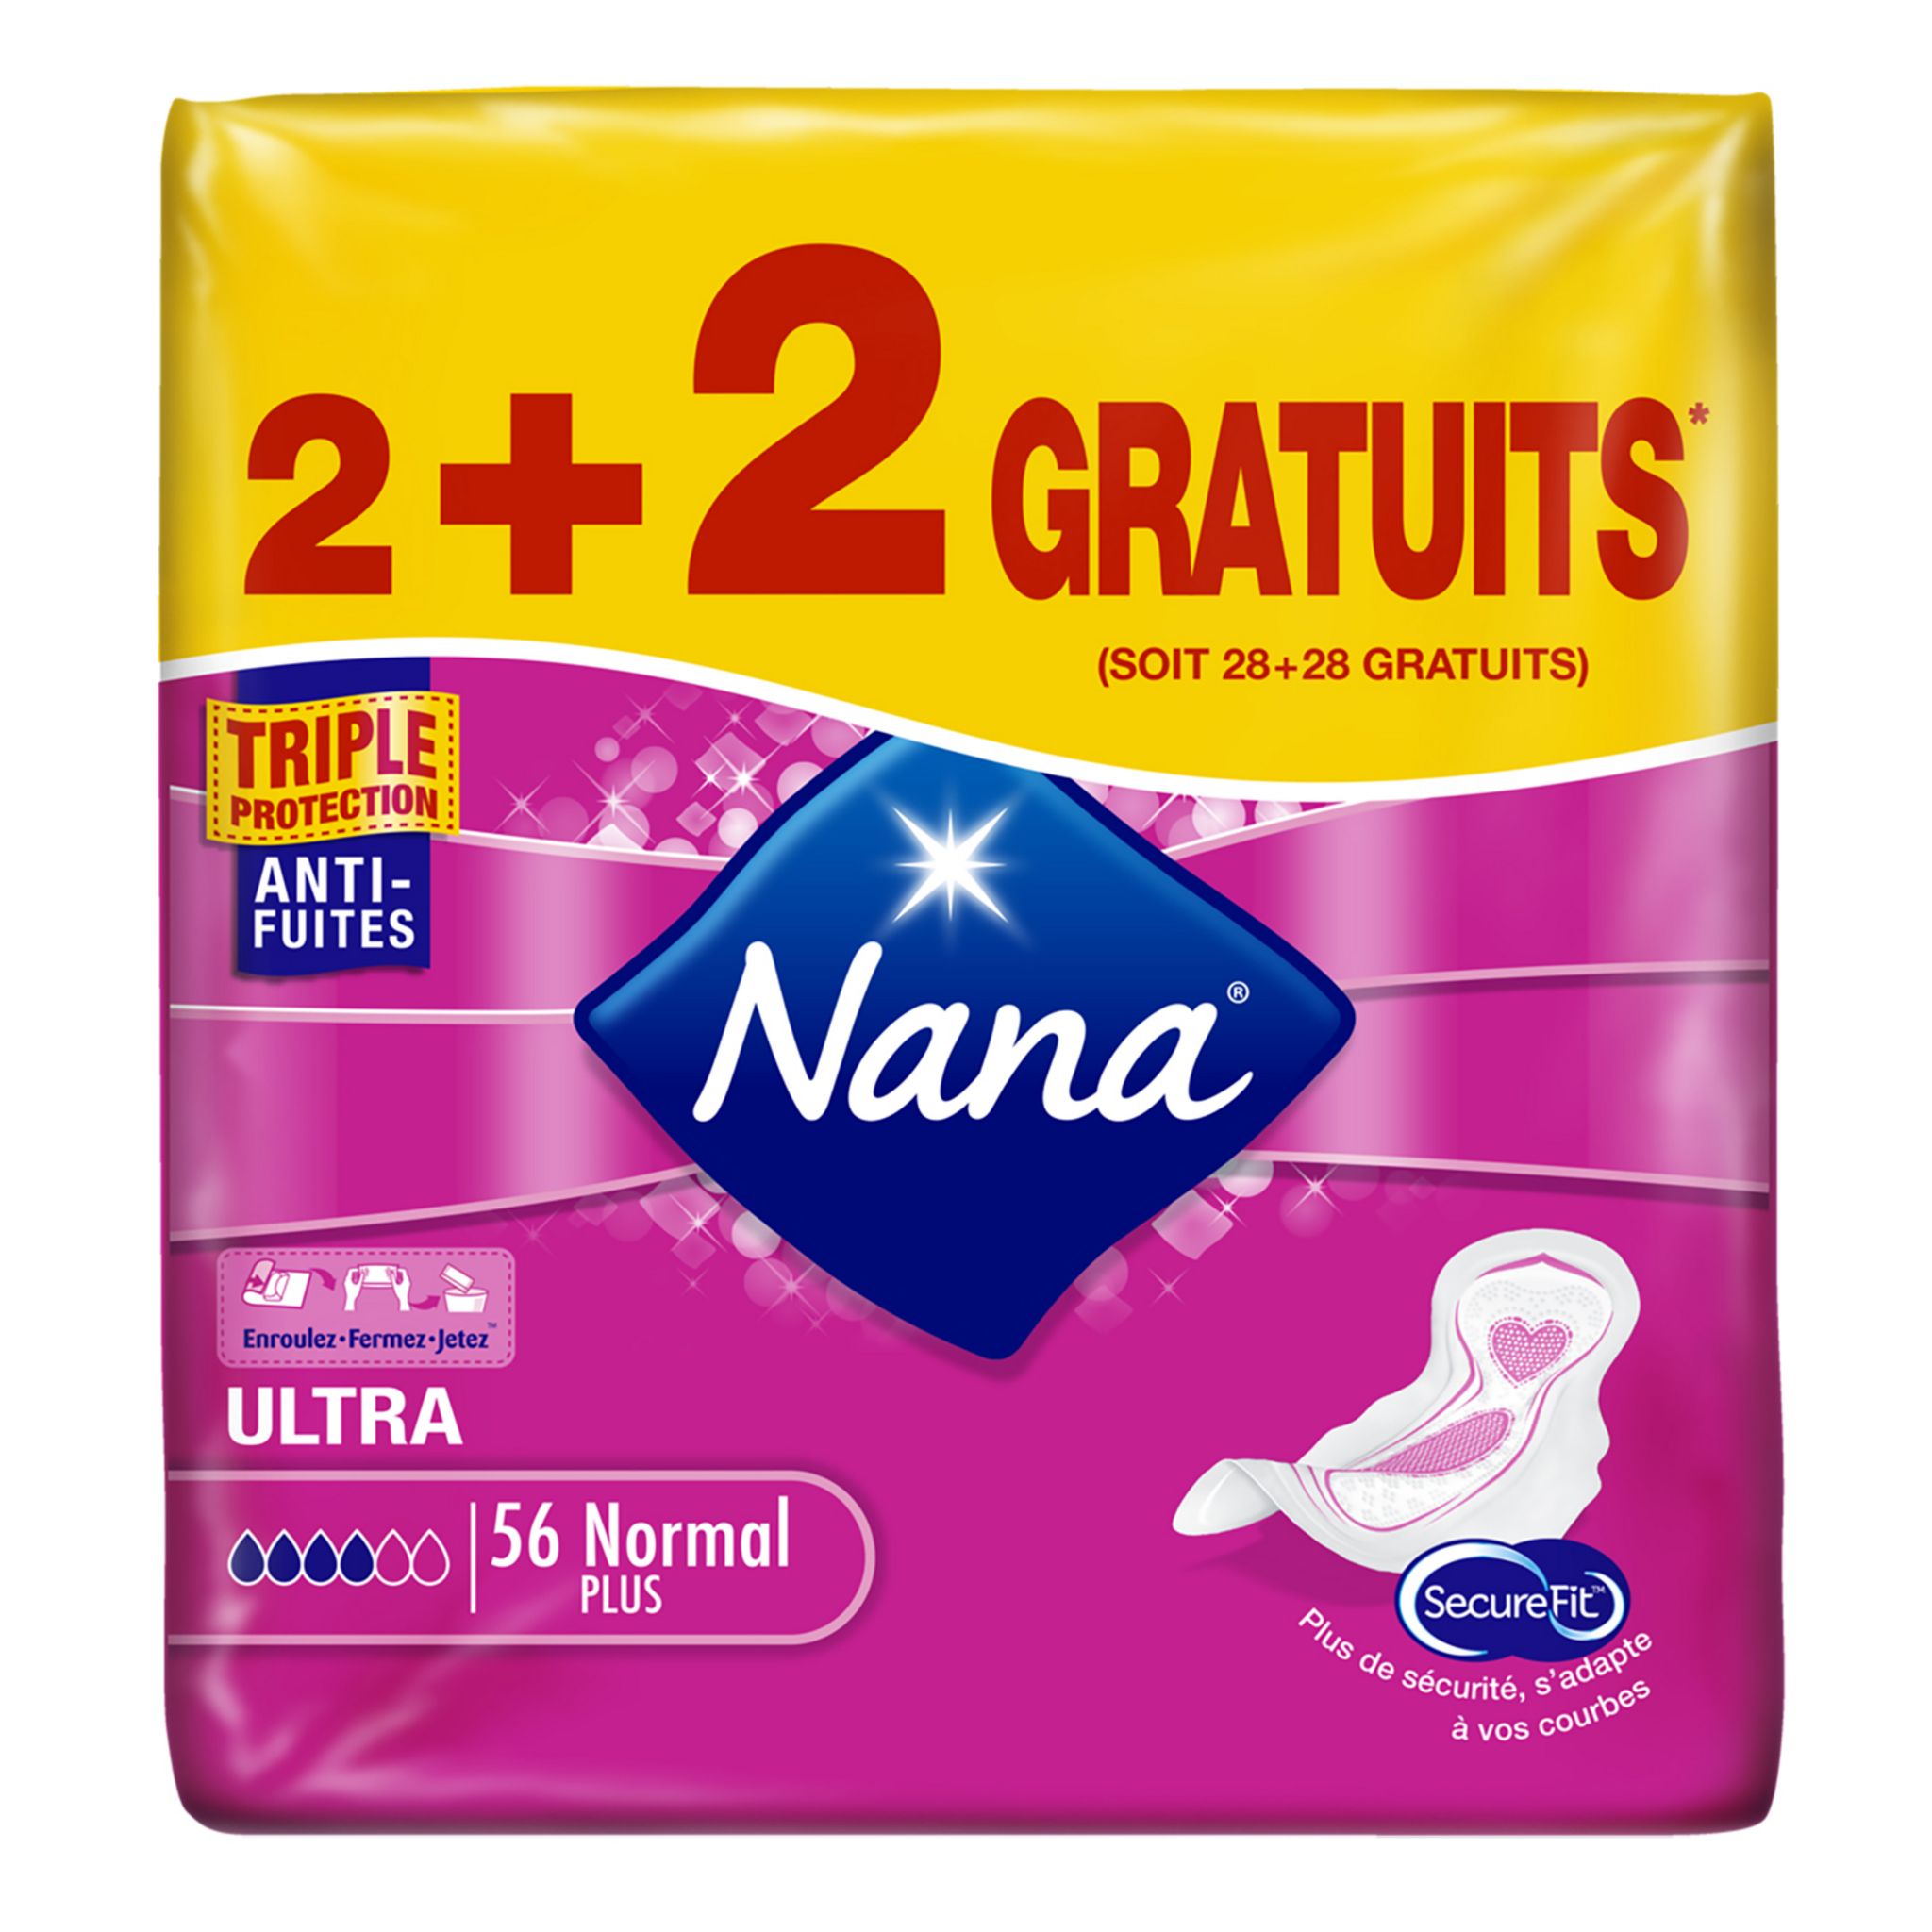 NANA Serviettes hygiéniques avec ailettes ultra normal plus 56 serviettes  2x14 + 2x14 offerts pas cher 